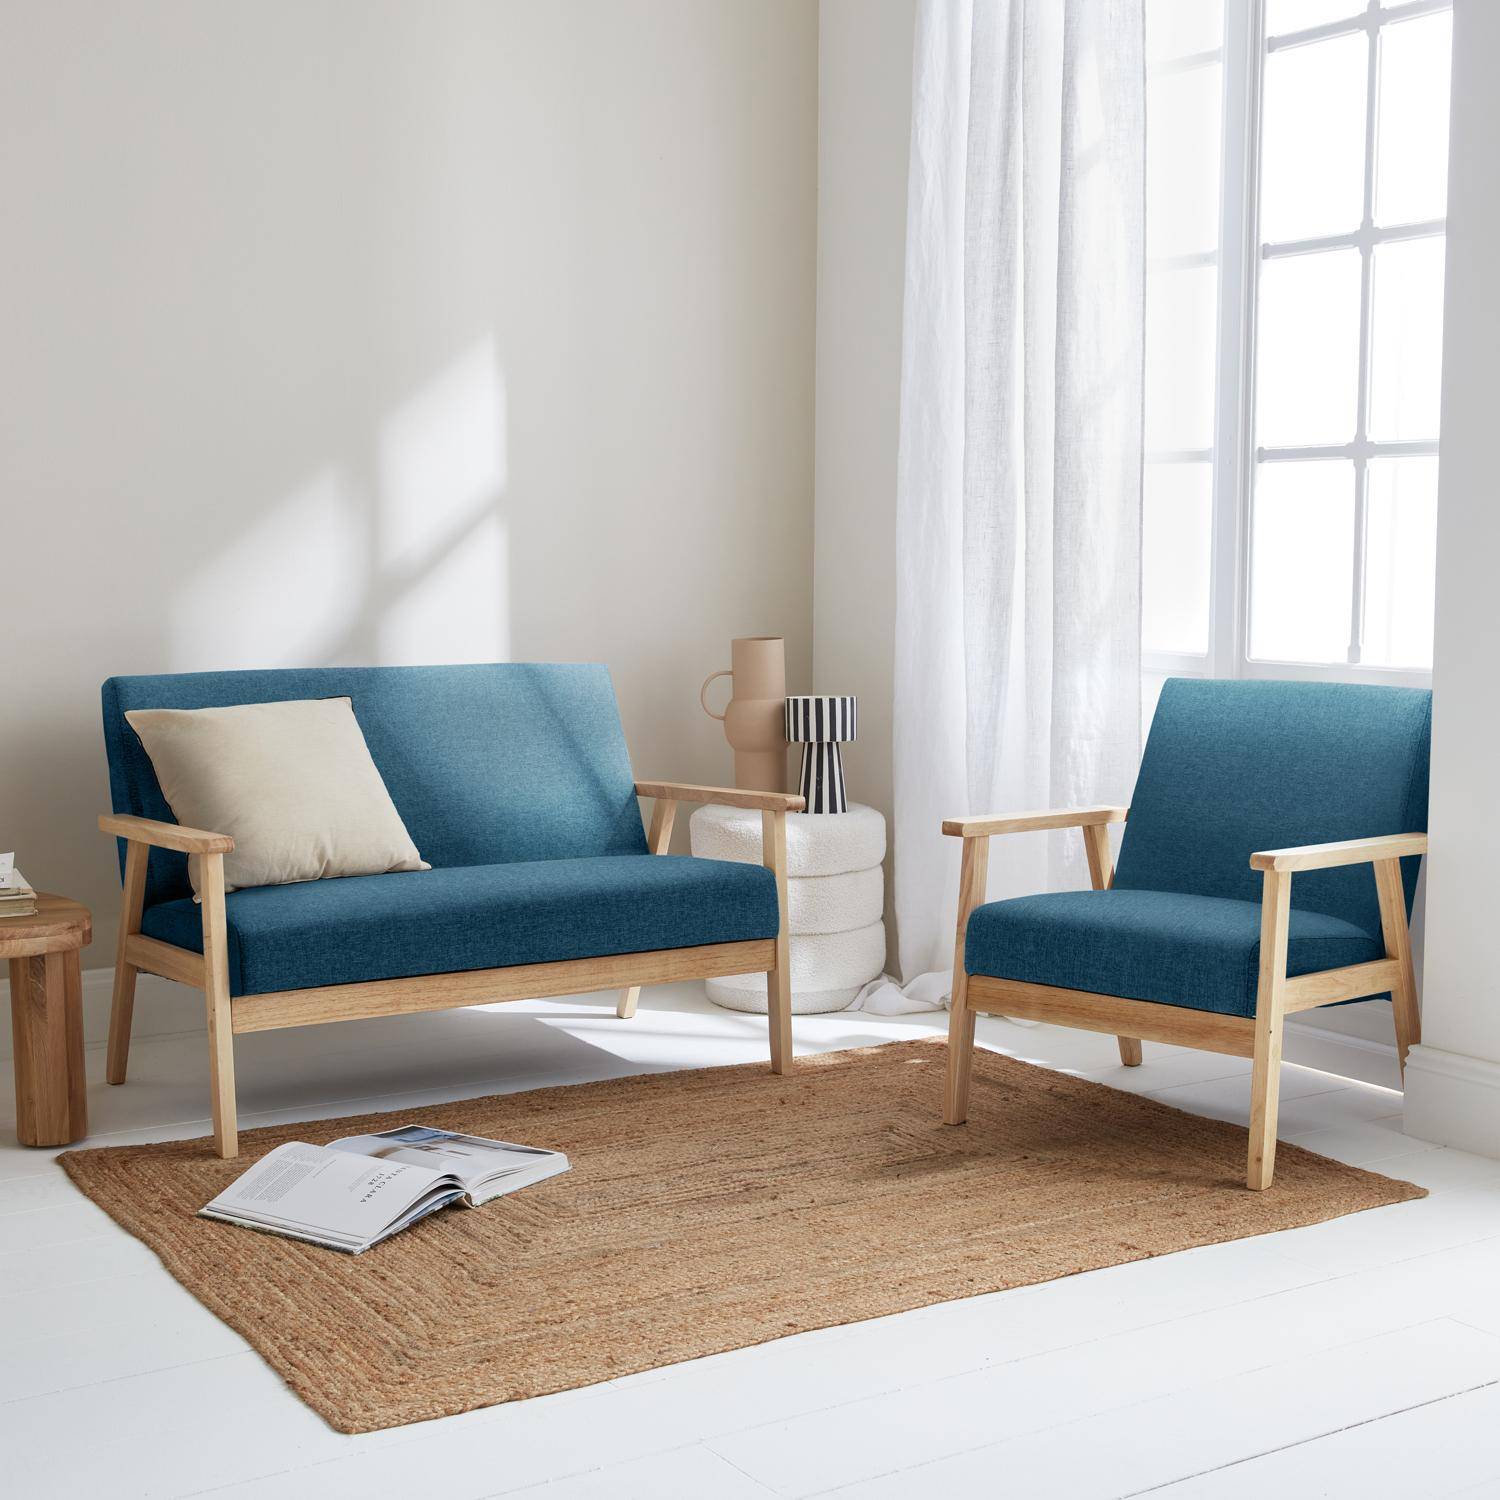 Banco y sillón escandinavos de madera y tela azul petróleo L 114 x A 69,5 x Alt 73cm,sweeek,Photo1